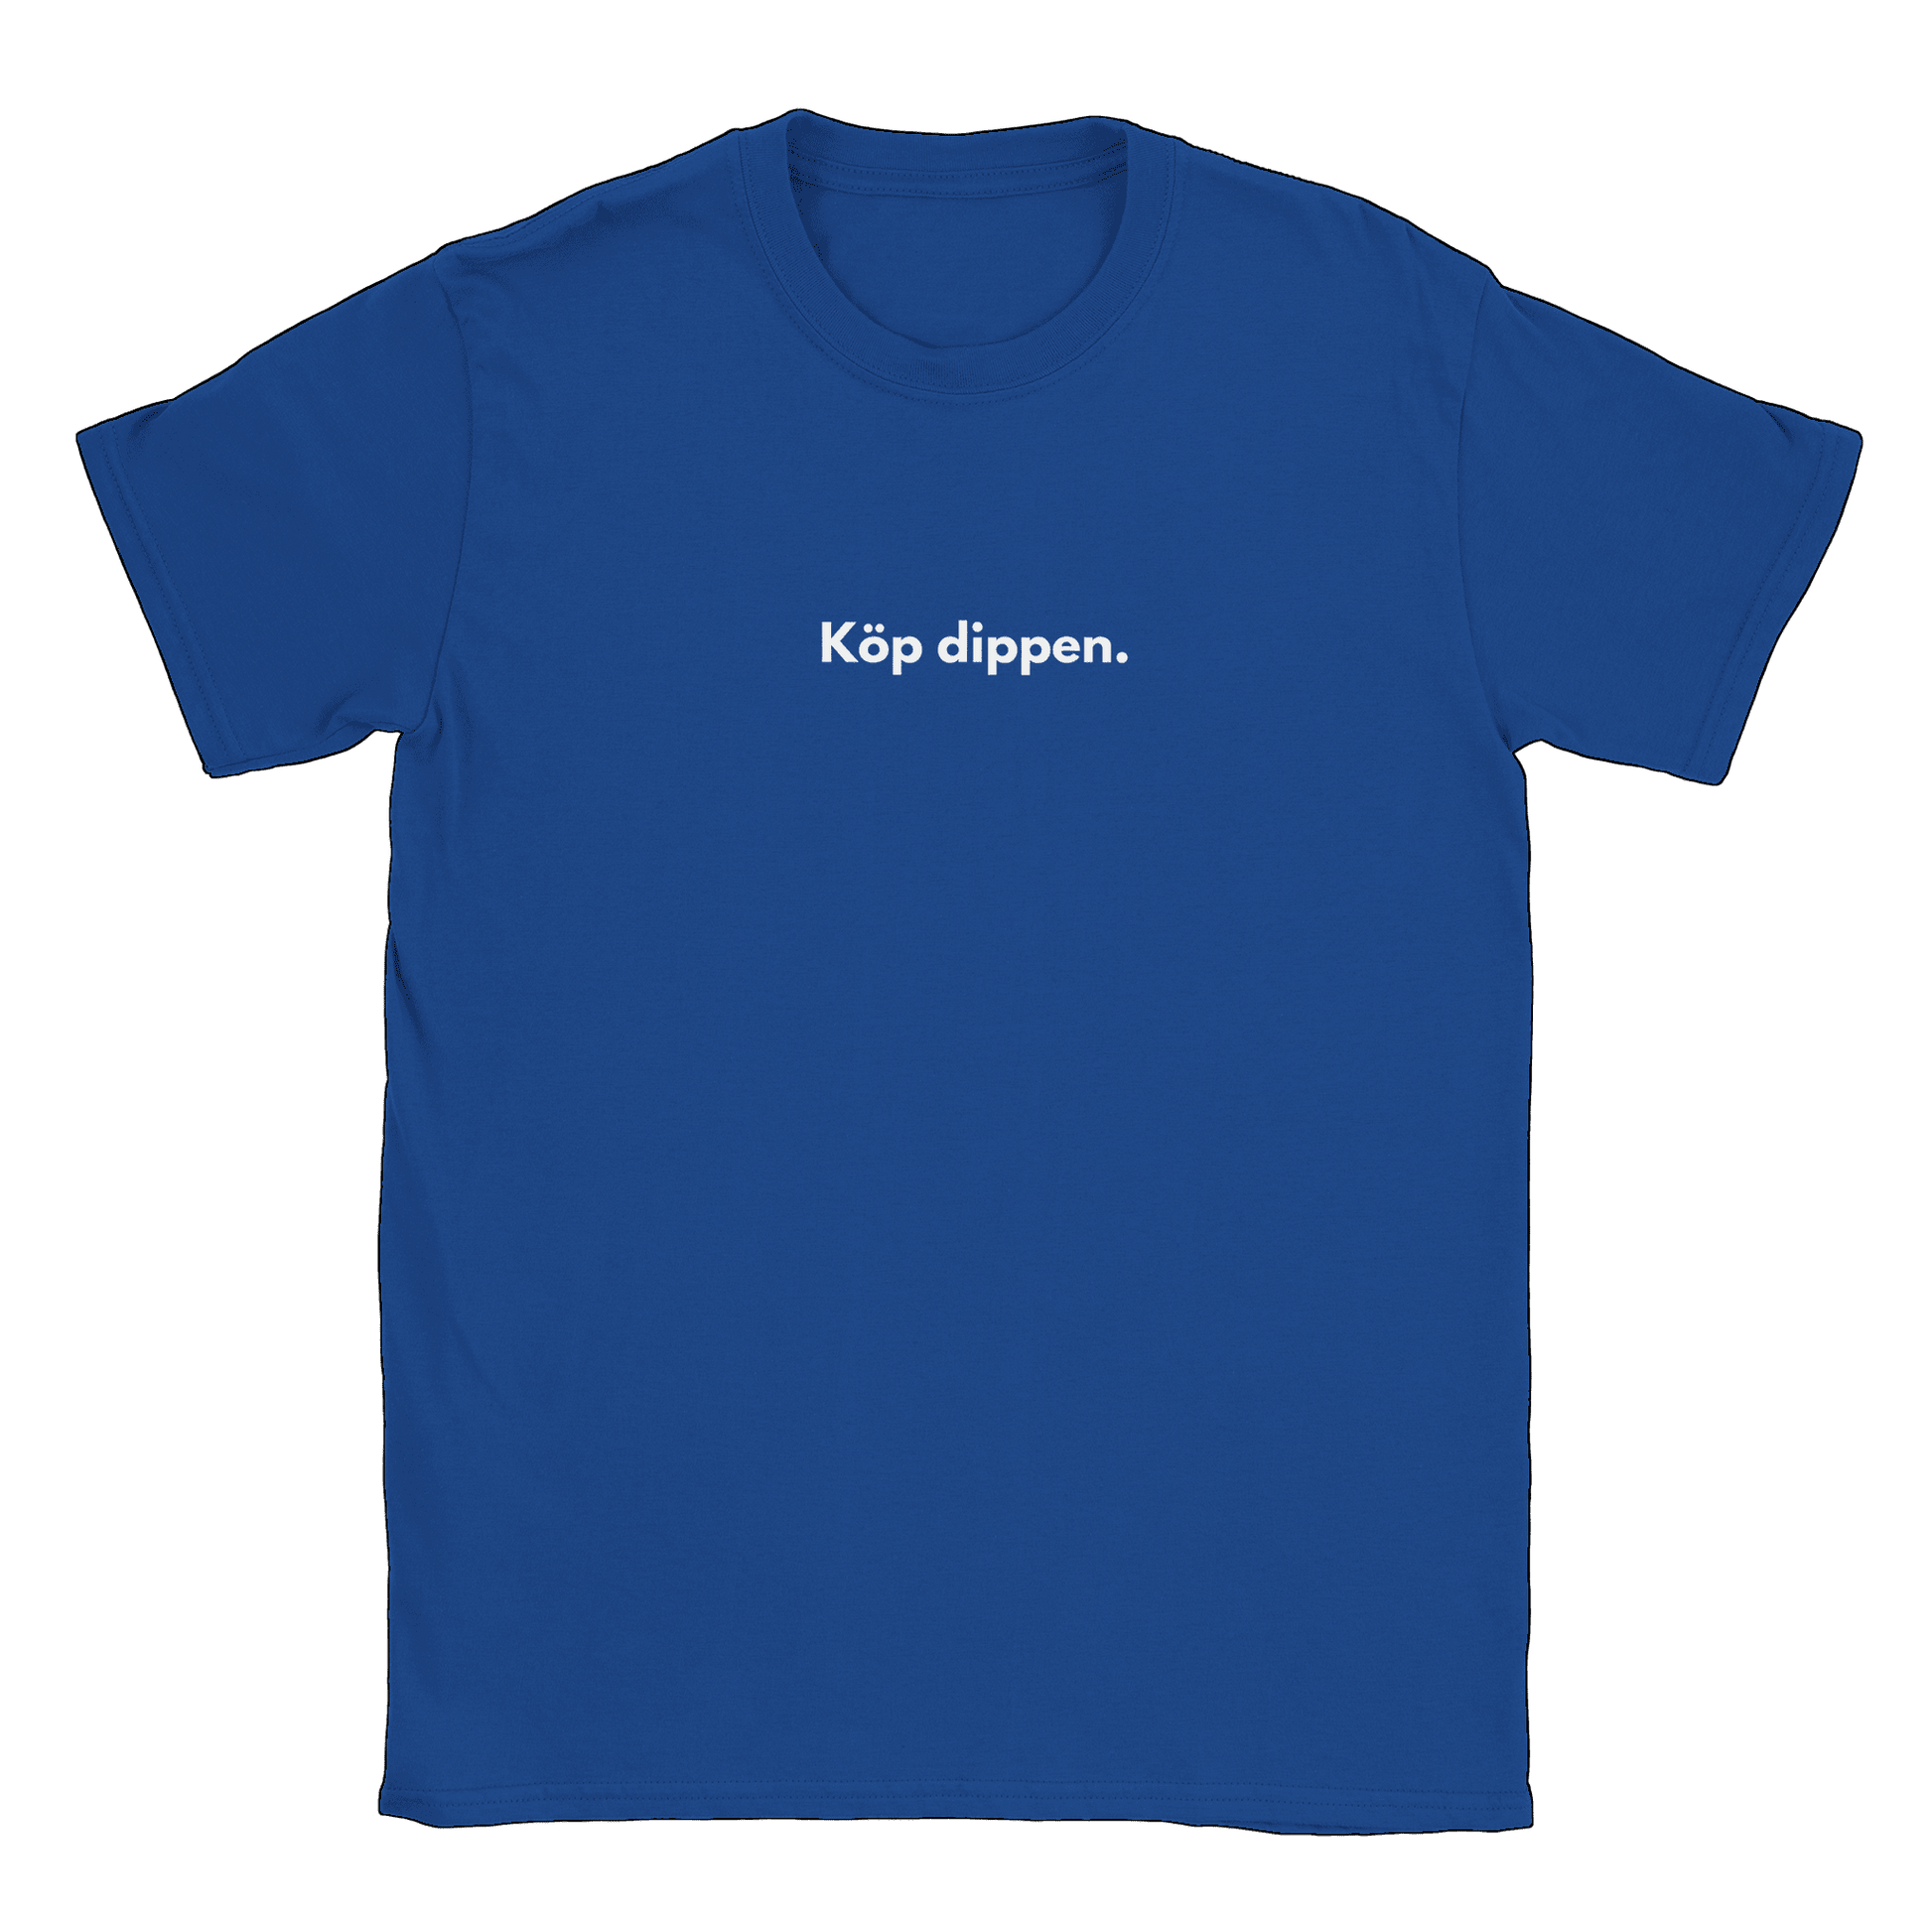 Köp dippen - T-shirt Blå